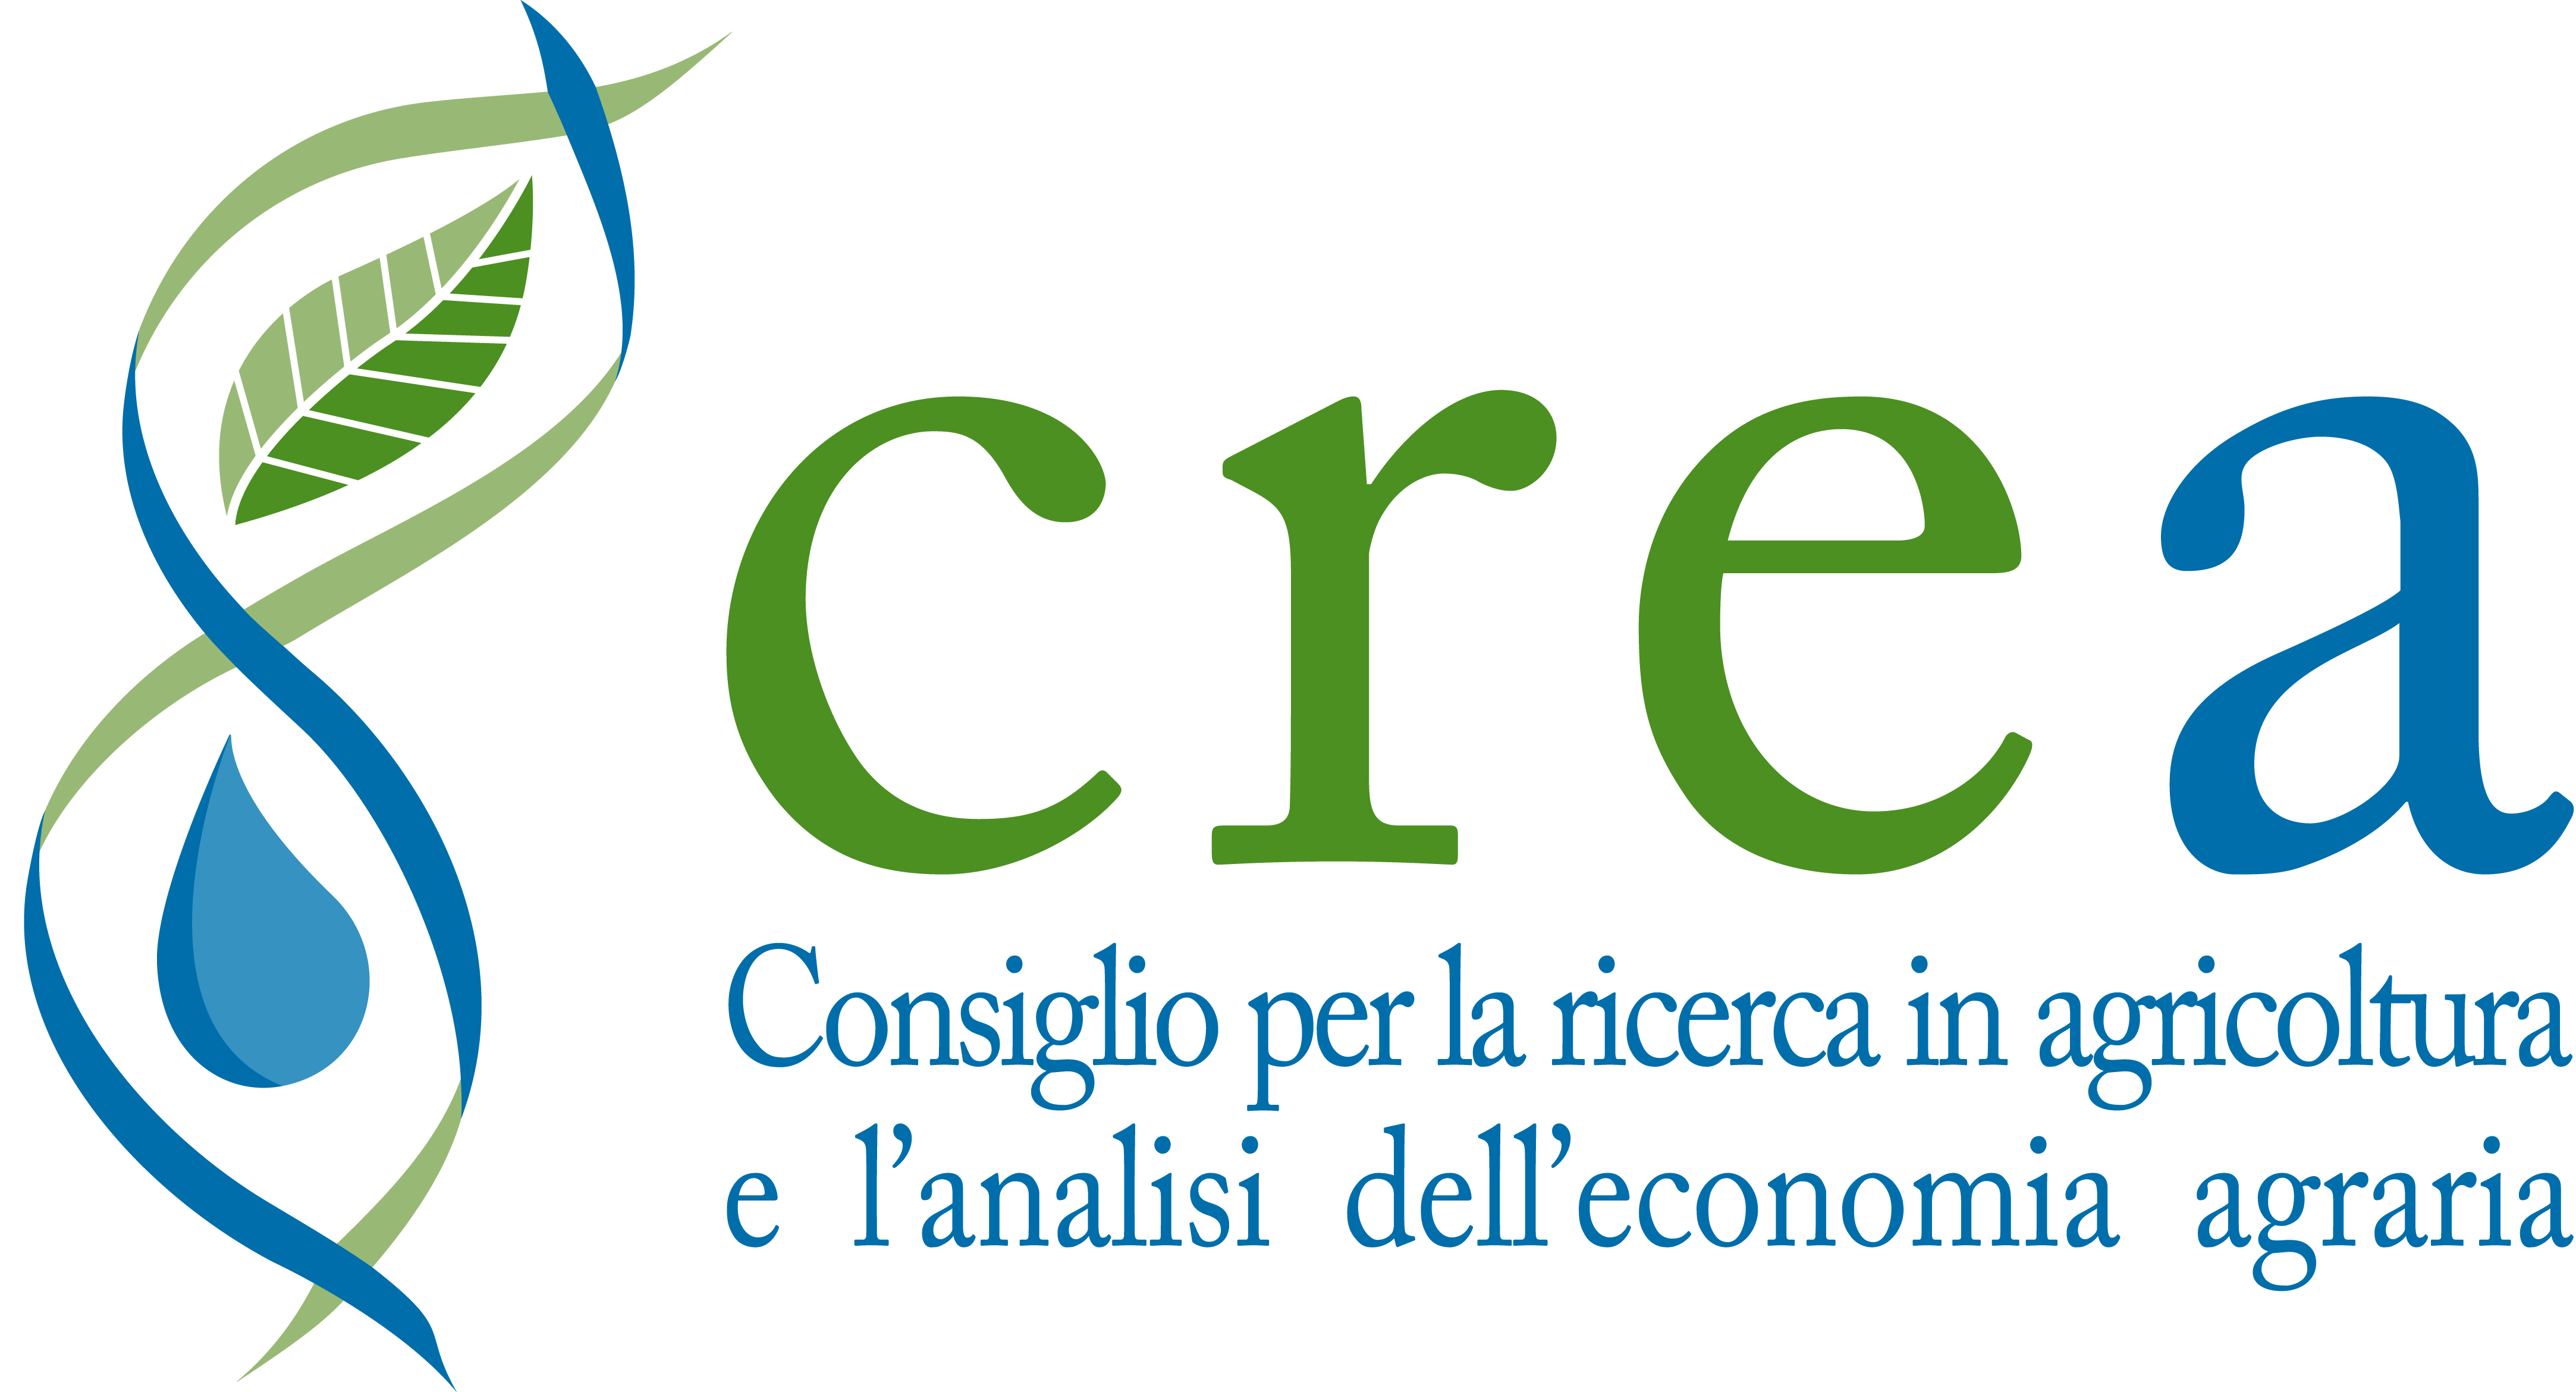 CREA - Consiglio per la ricerca in agricoltura e l'analisi dell'economia agraria - LGCA